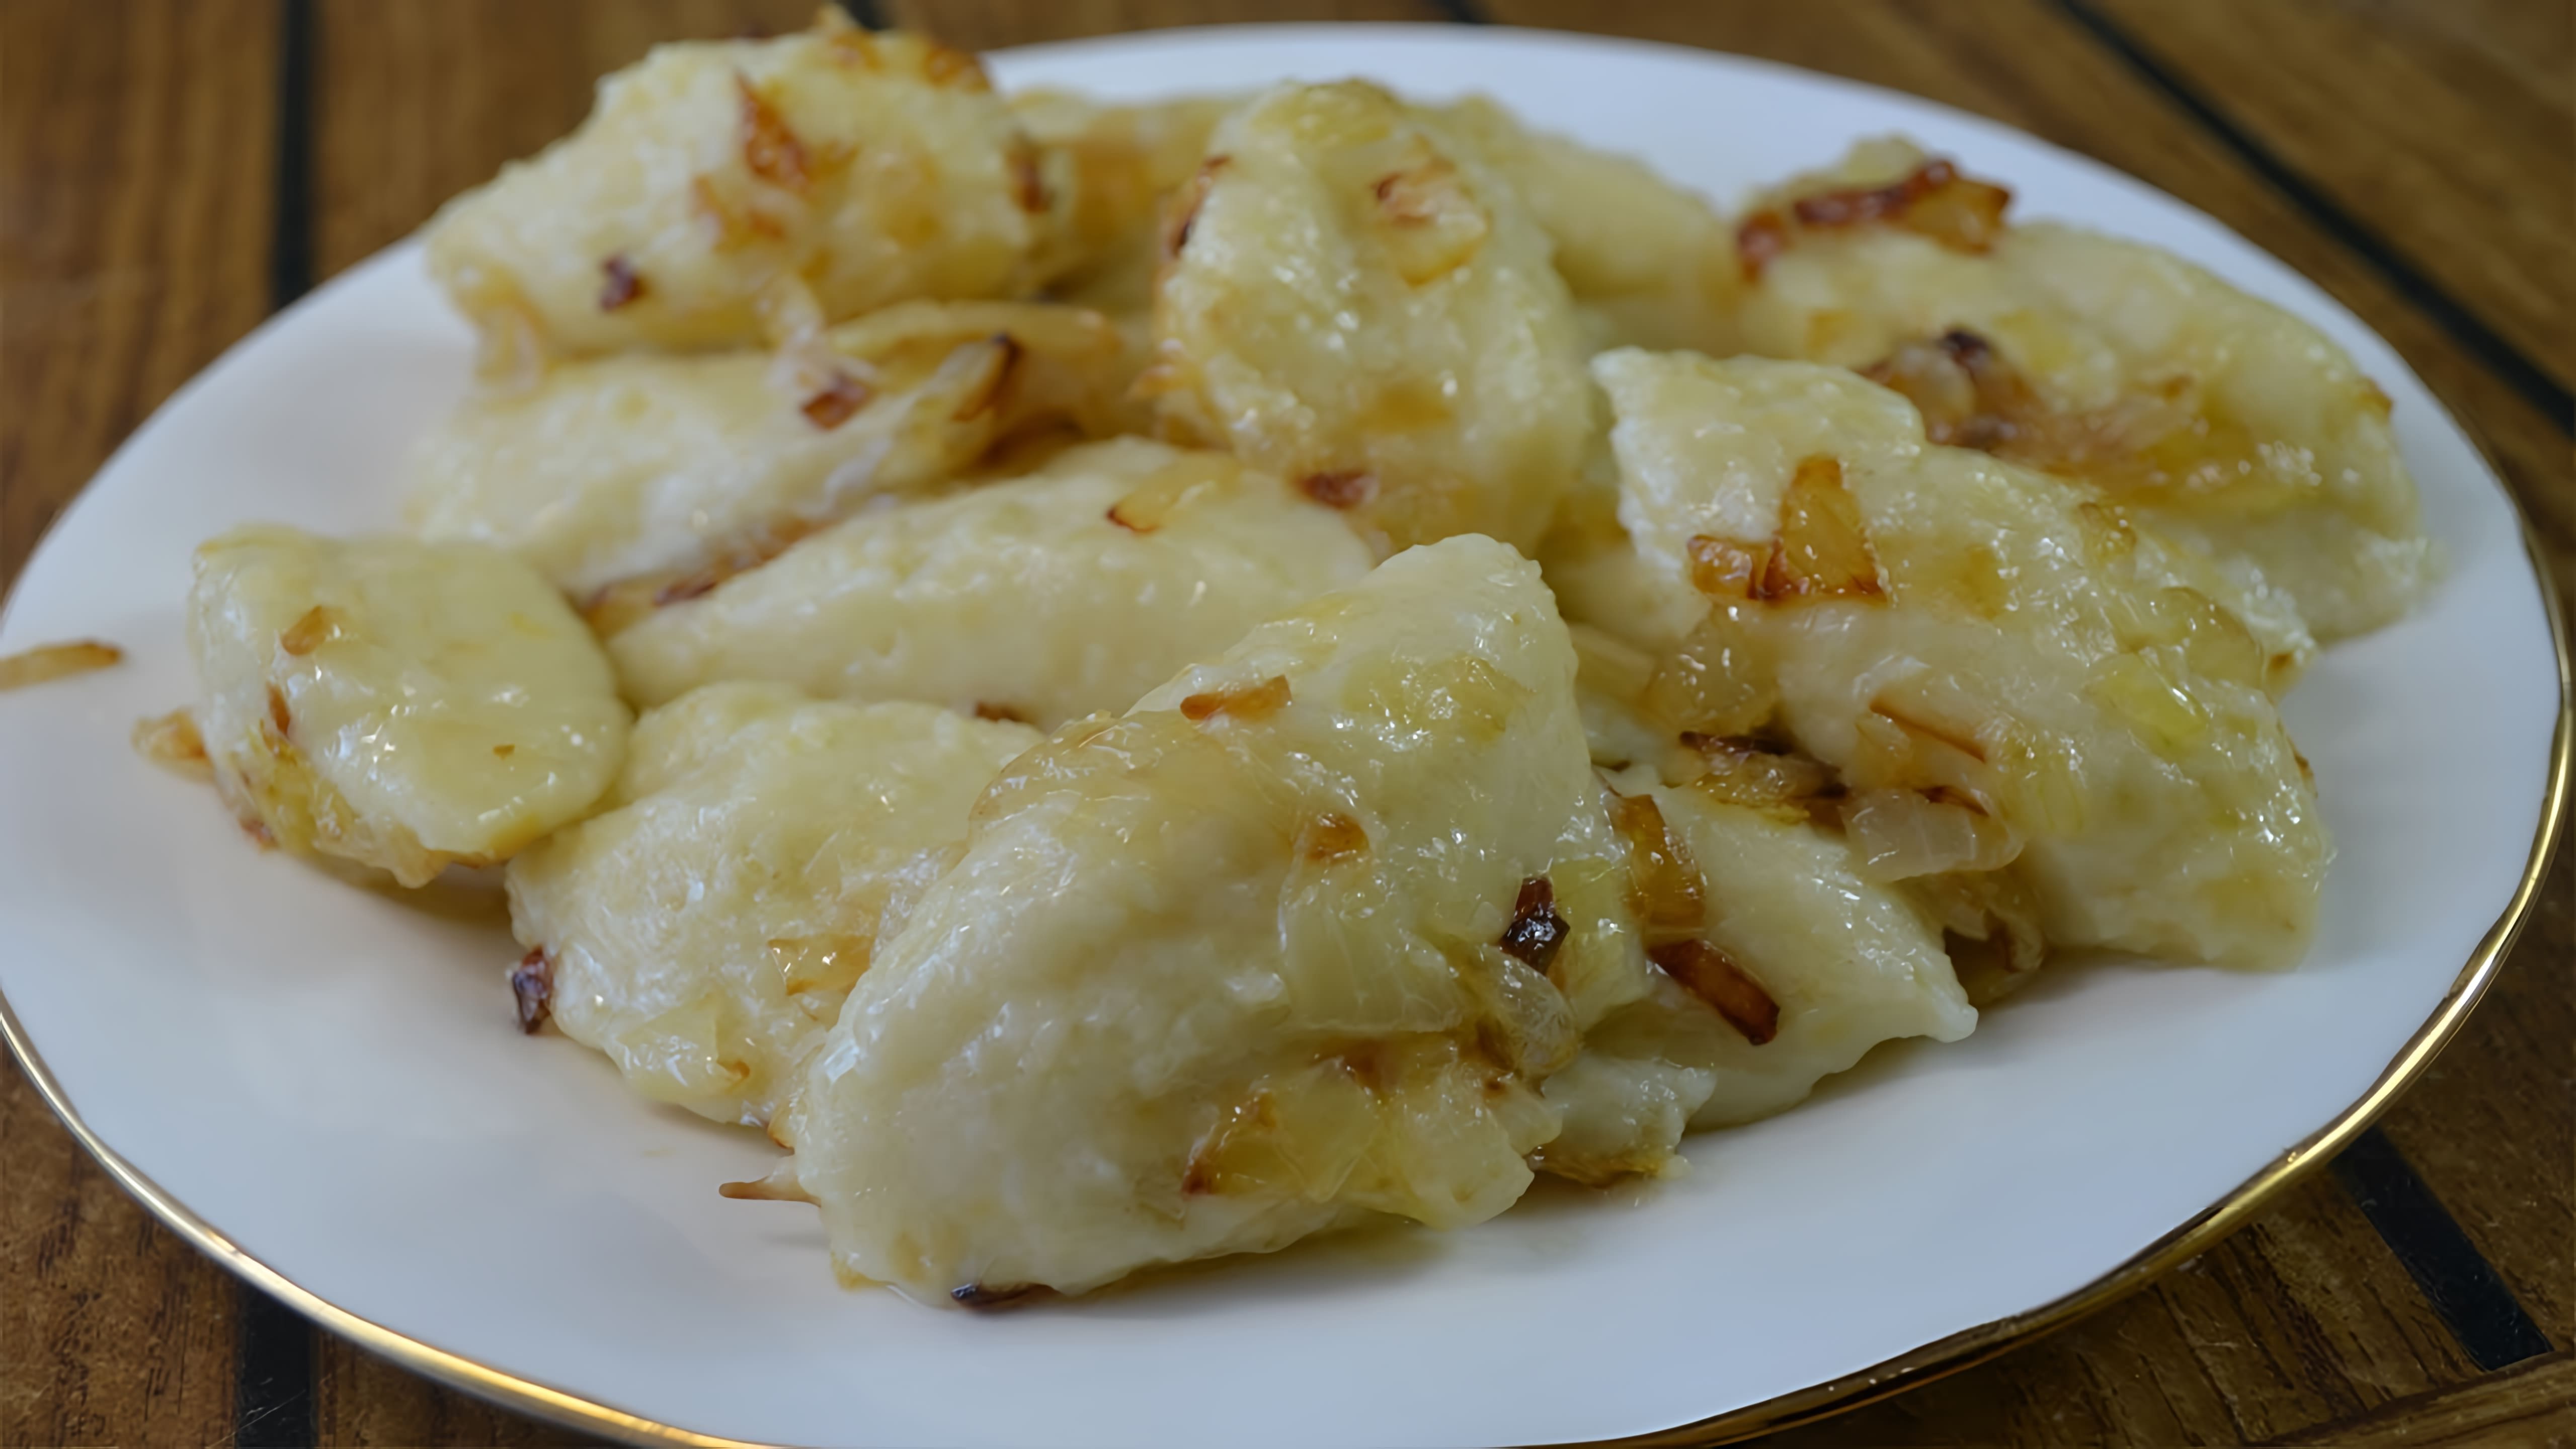 В этом видео демонстрируется рецепт приготовления ленивых картофельных вареников